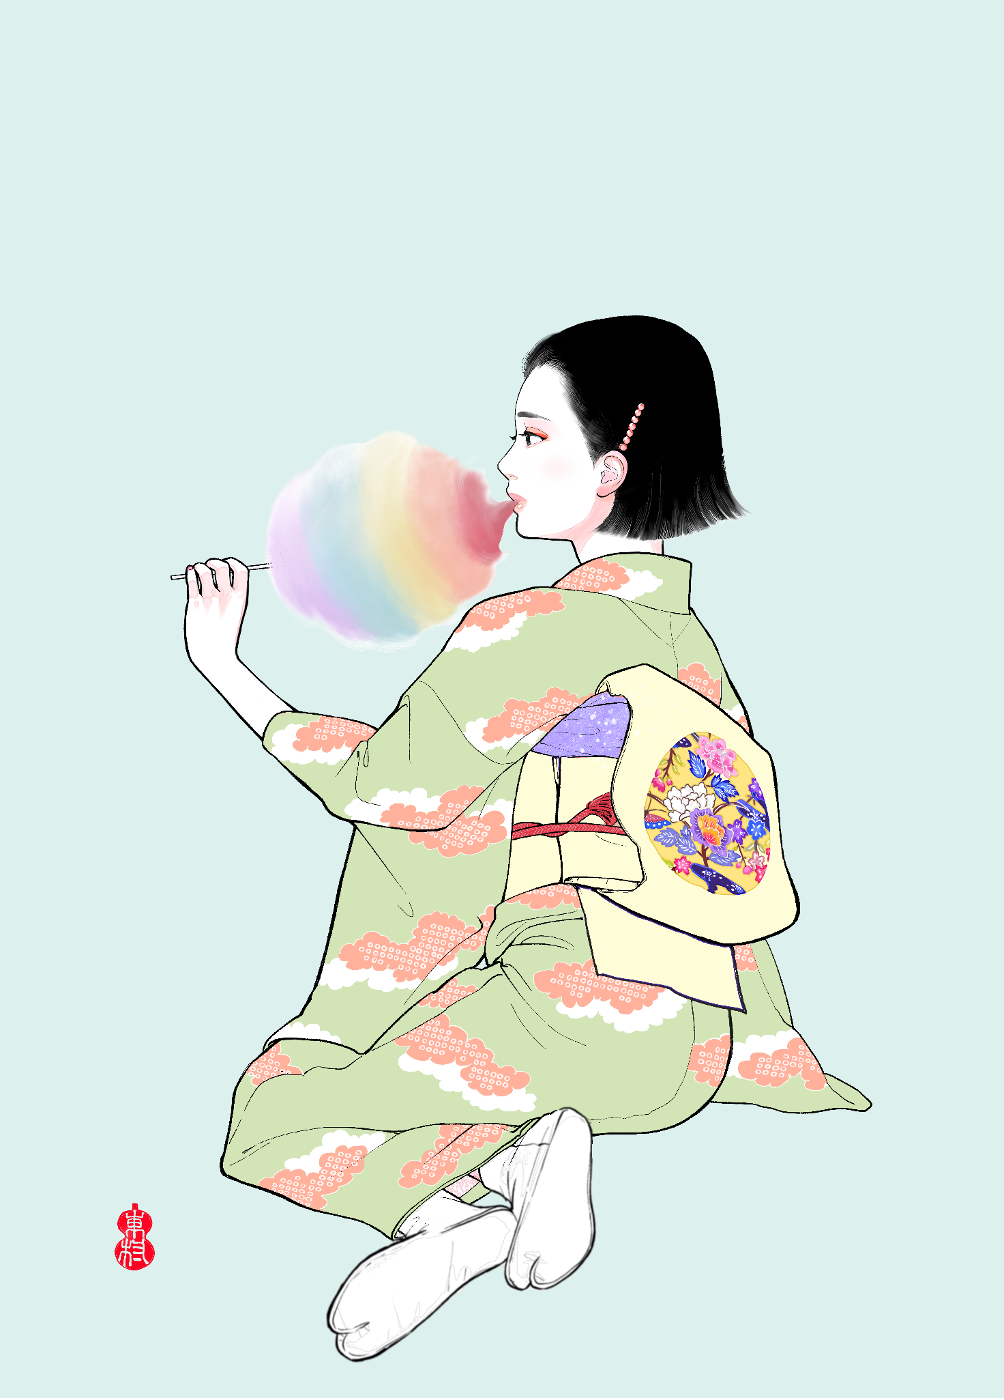 東村アキコが現代アート作家として第1弾となるNFTアート作品群『NEO美人画2022』発表 | CINRA